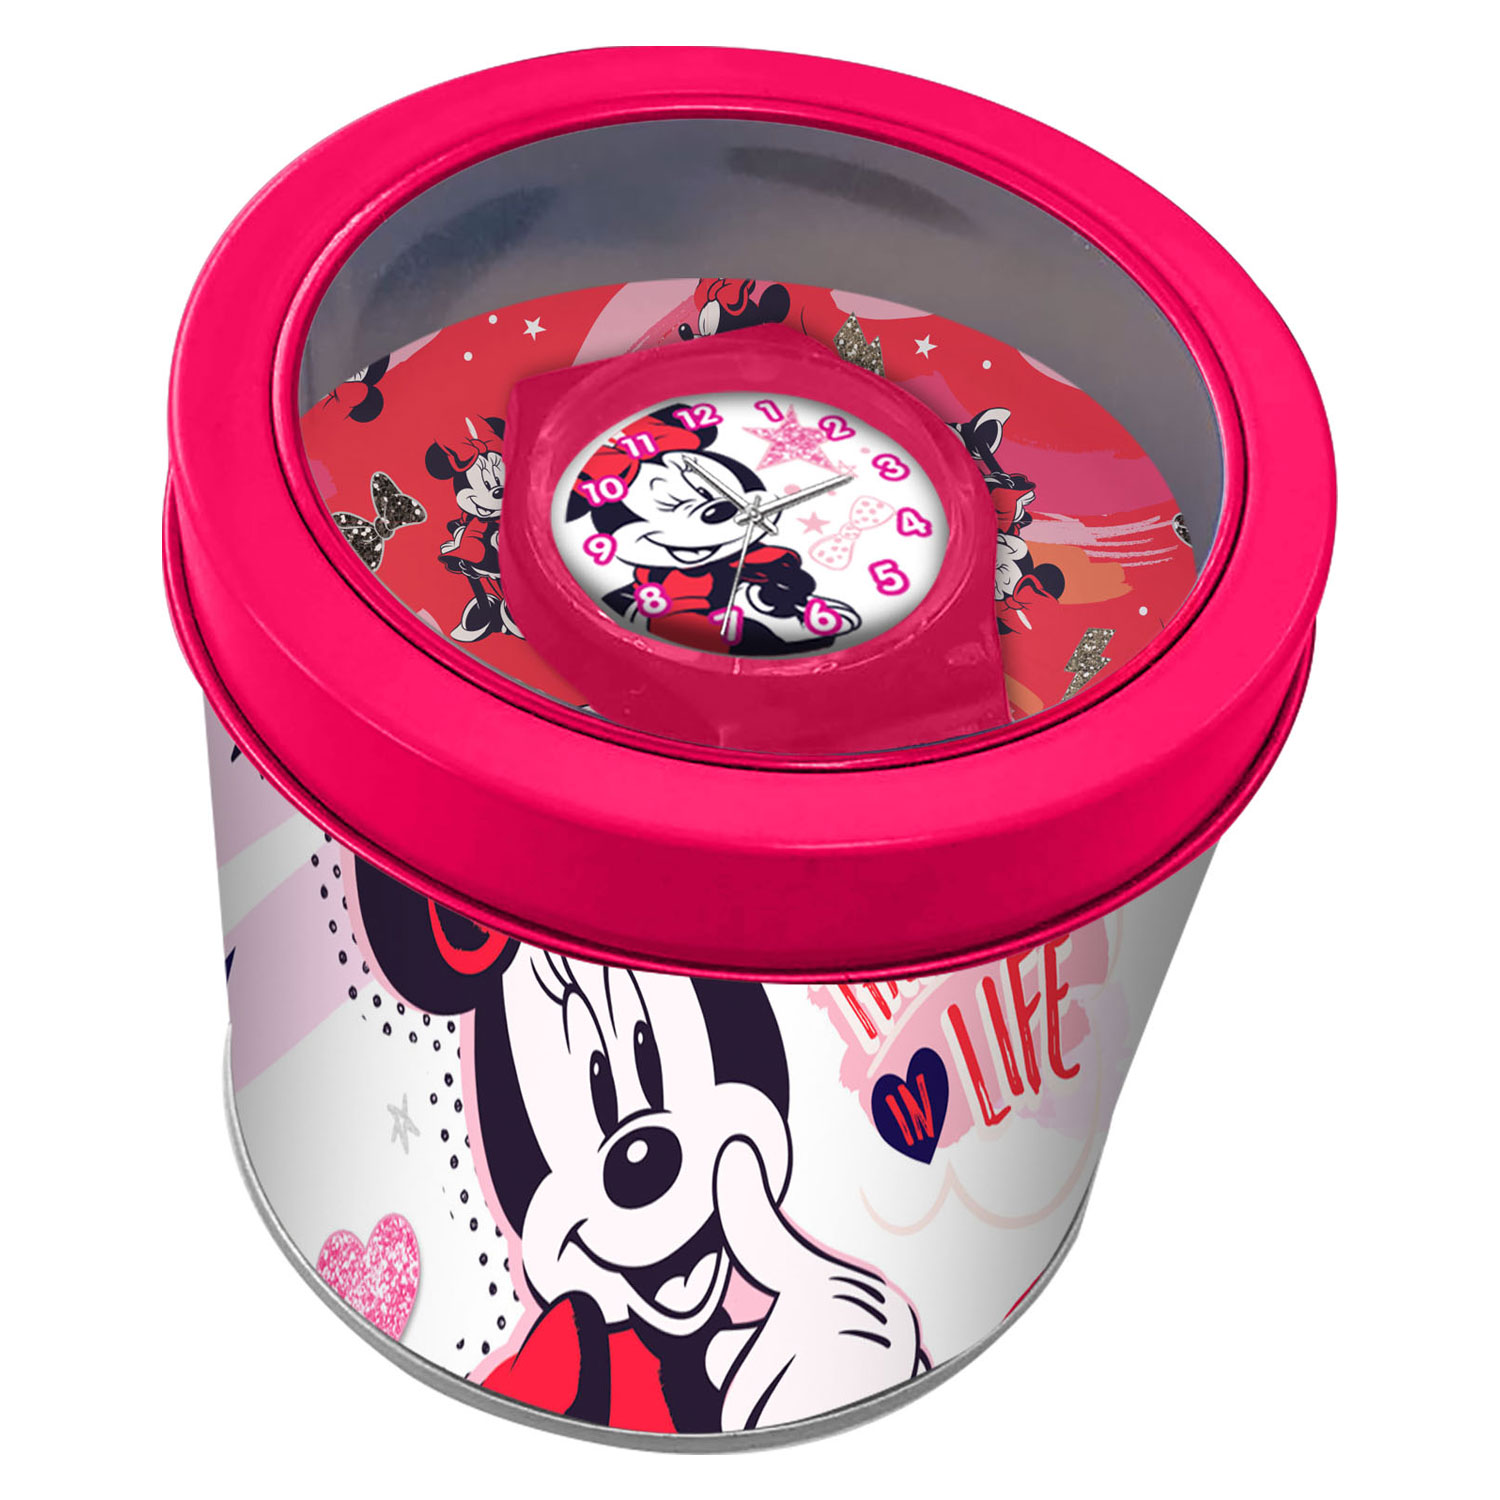 Armbanduhr sich Minnie Mouse in einer Metallbox an